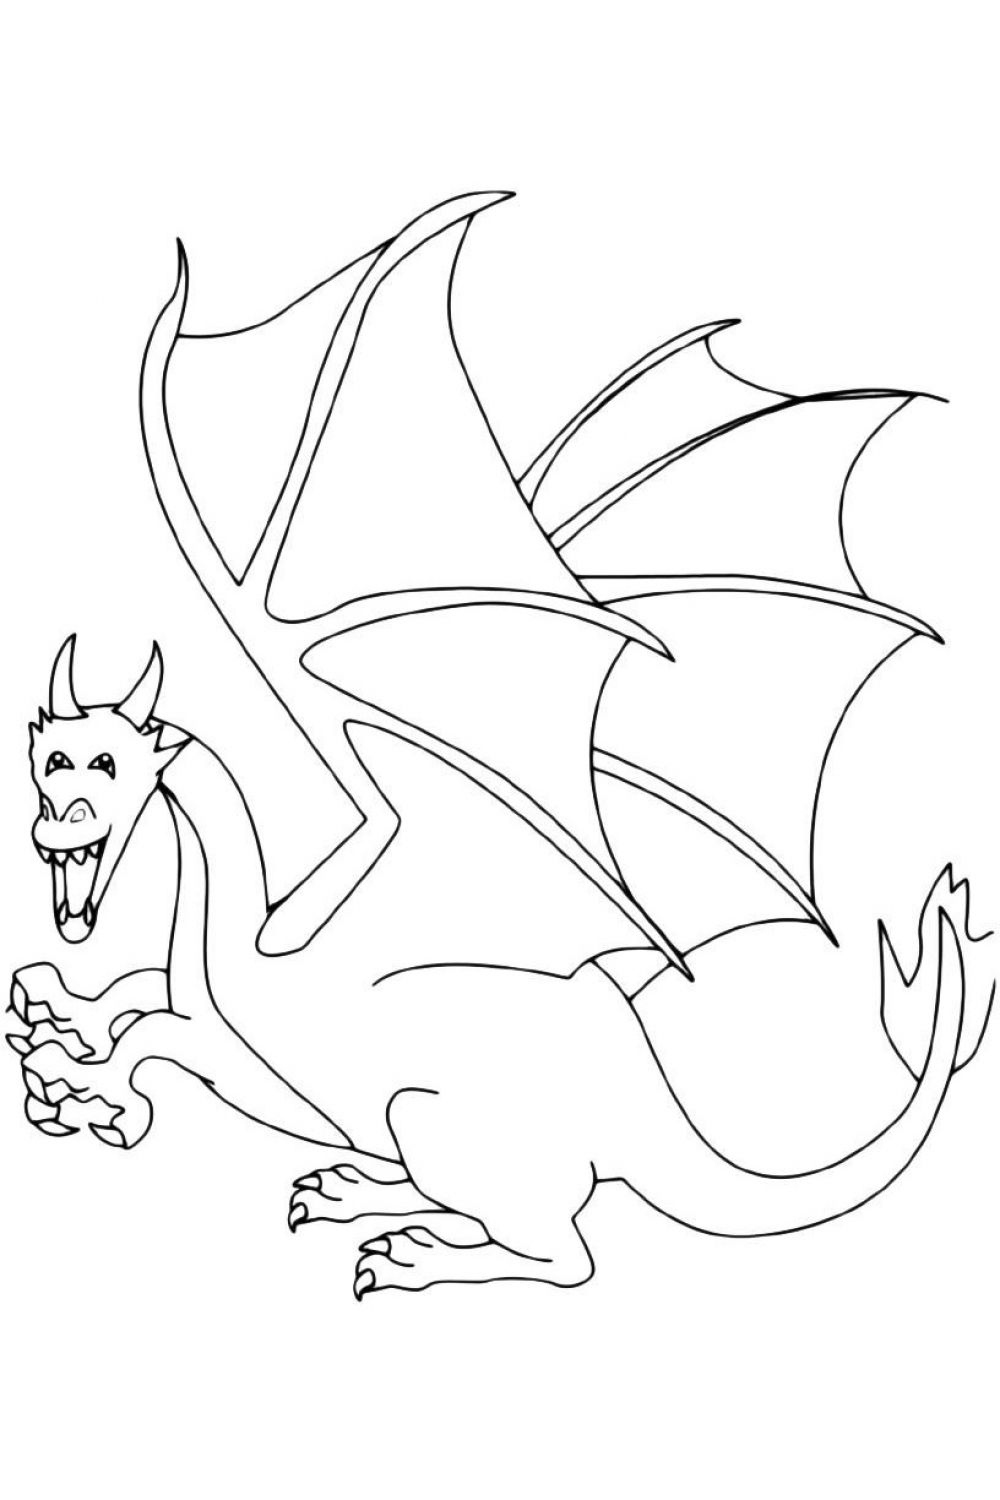 Coloriage Dragons. Imprimer gratuitement.